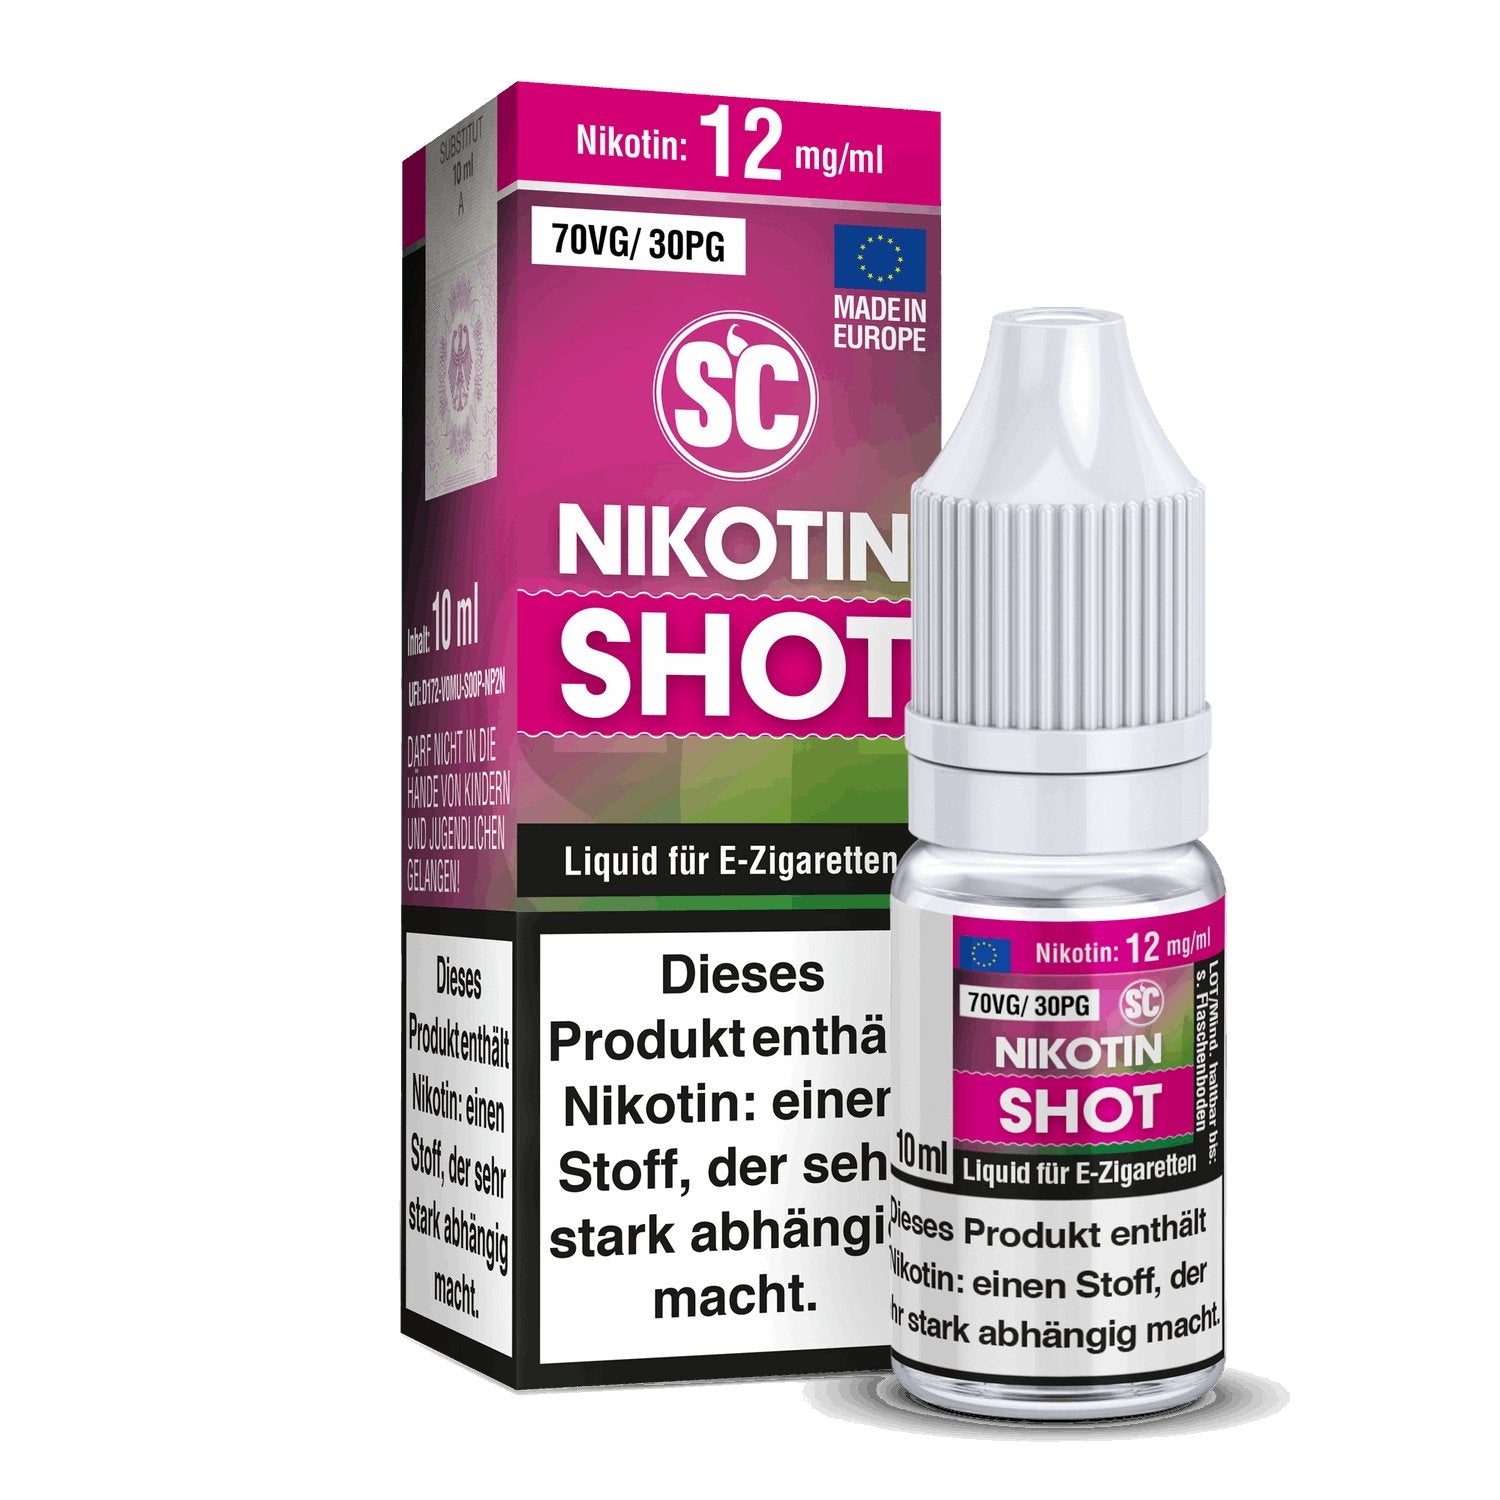 SC - Nikotin Shot - 10ml (70VG/30PG) - 70VG / 30PG 1er Packung 12 mg/ml- Vapes4you